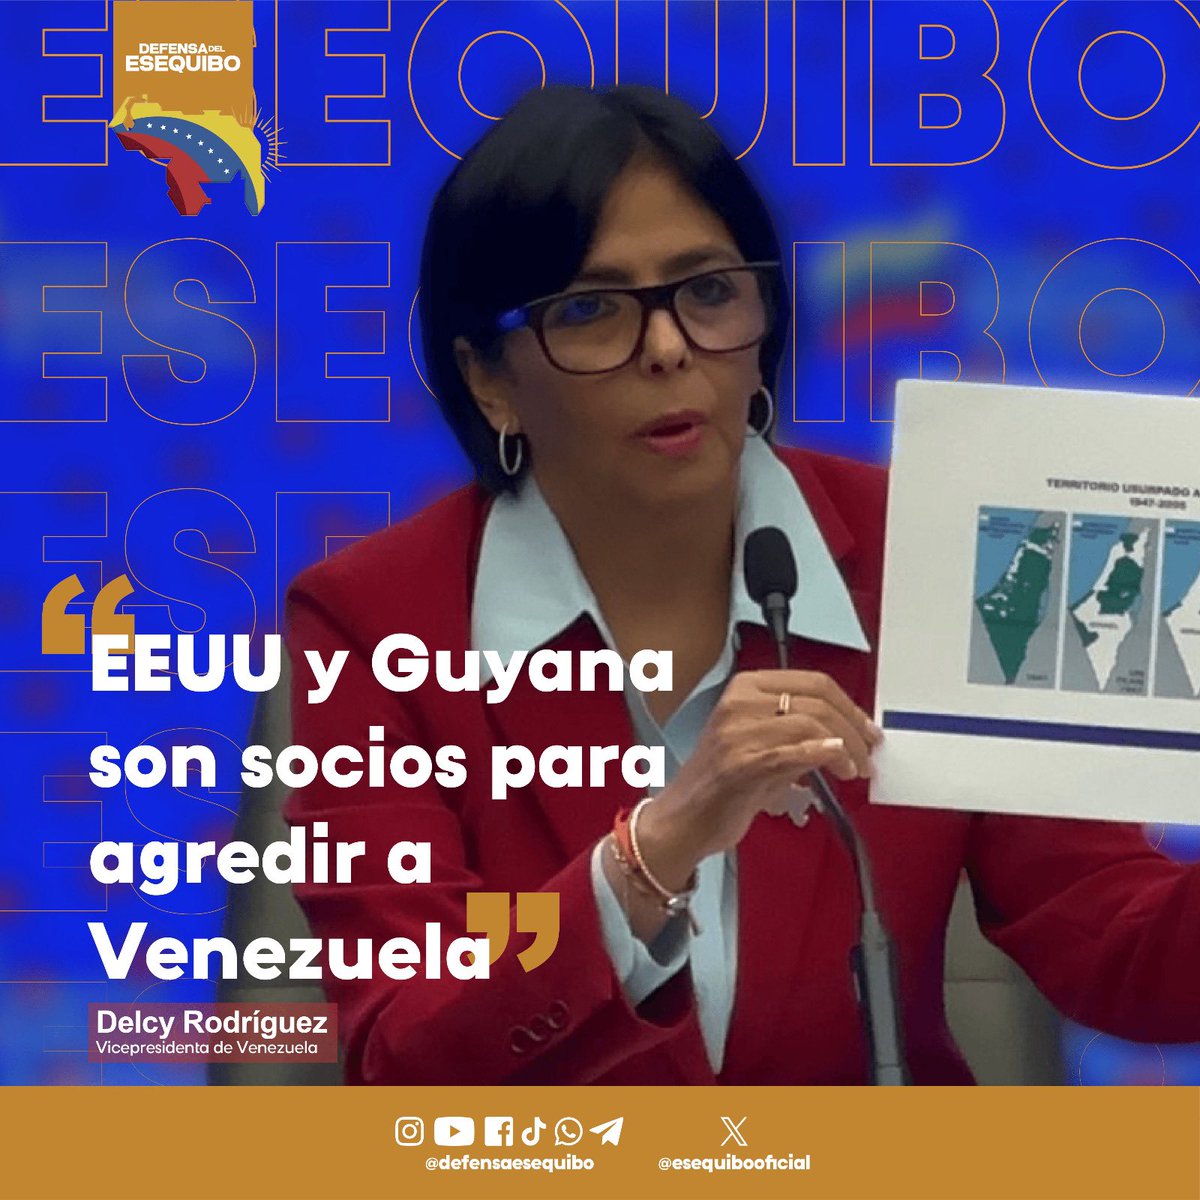 Denunciamos que EEUU y Guyana son socios para agredir a Venezuela. La petición inédita e insólita a la Corte Internacional de Justicia de medidas provisionales para que no proceda el referéndum consultivo del #3D no tiene asidero legal, sólo demuestra la desesperación de las